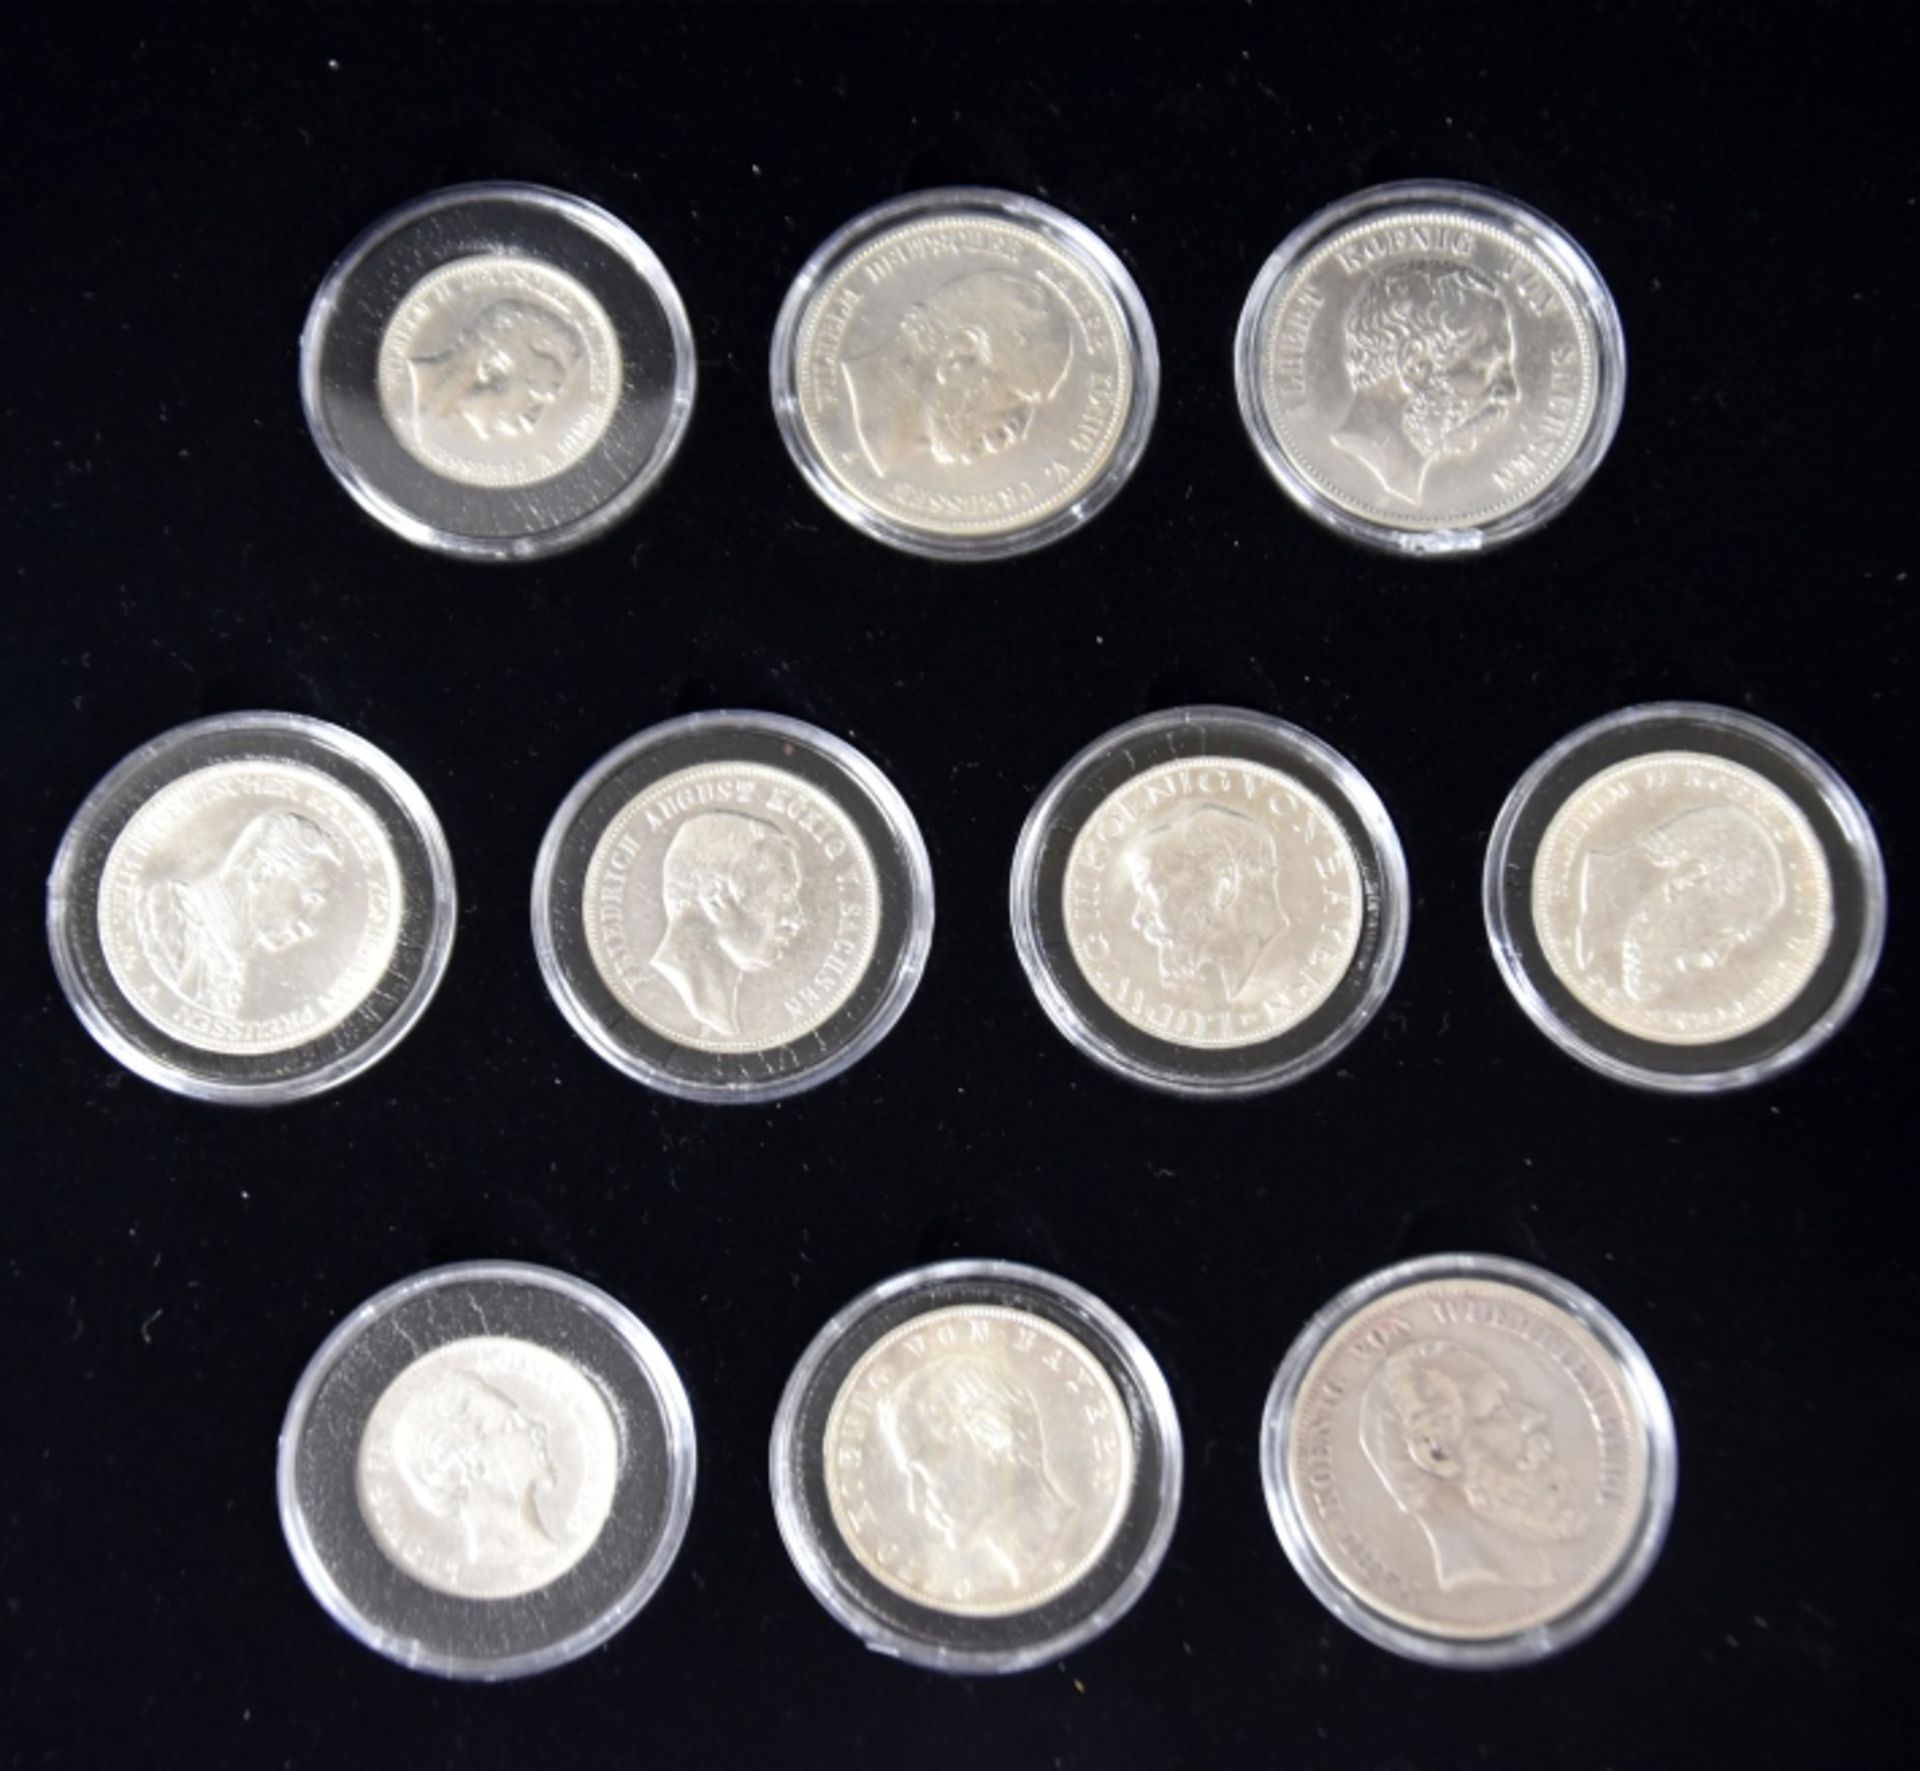 KLEINE MÜNZSAMMLUNG Silbermünzen Deutsches Reich: 3x5 Mark, 5x3 Mark, 2x2 Mark, Preussen, Bayern, - Bild 3 aus 3